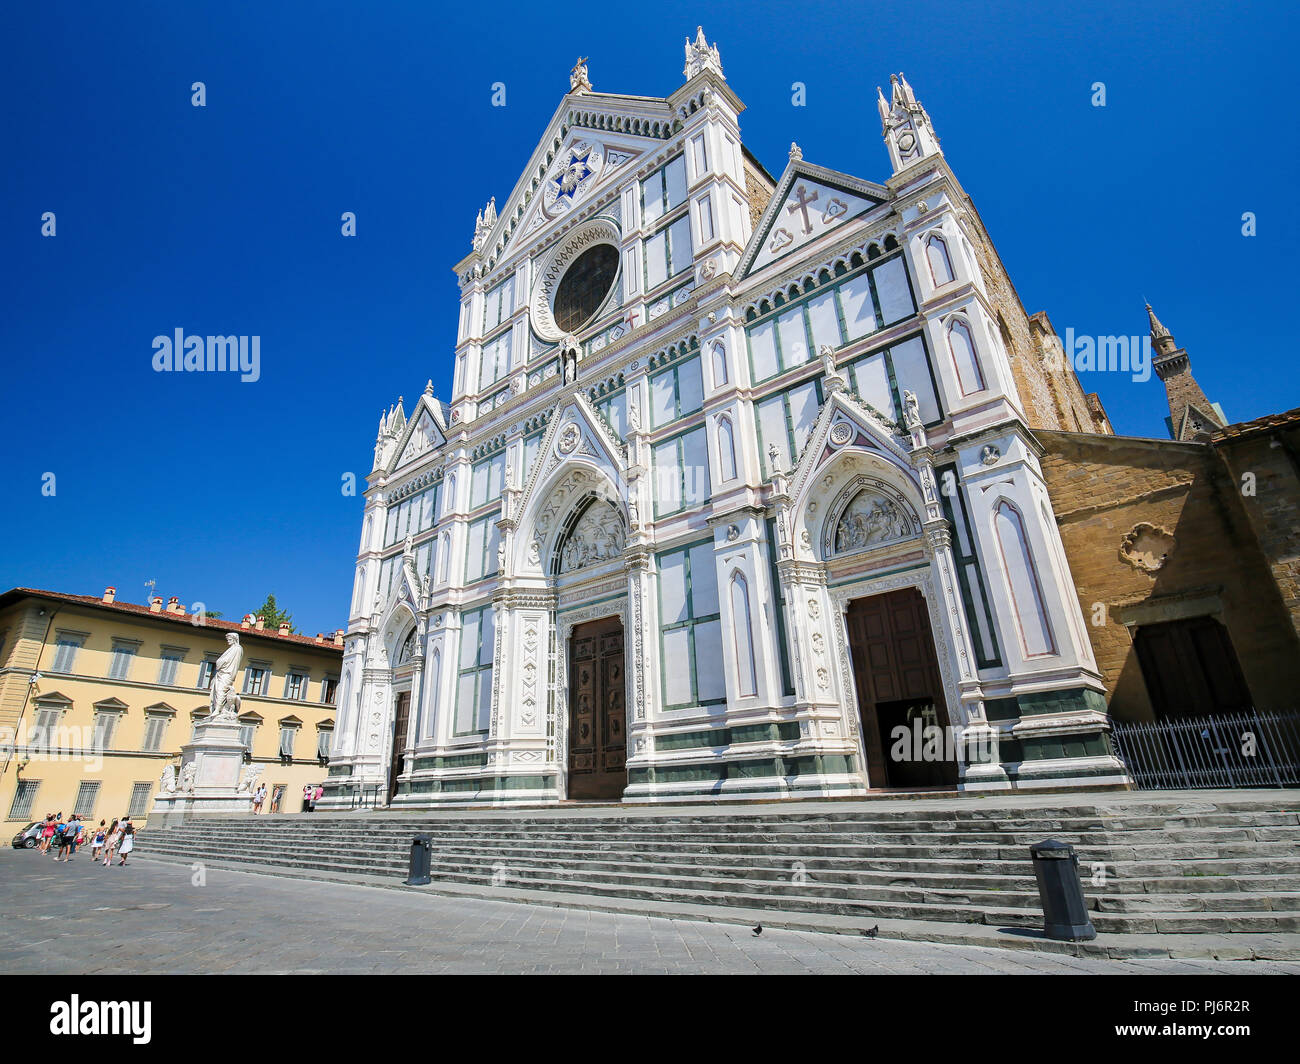 Facade of the Basilica Santa Croce in Florence, Italy. Stock Photo